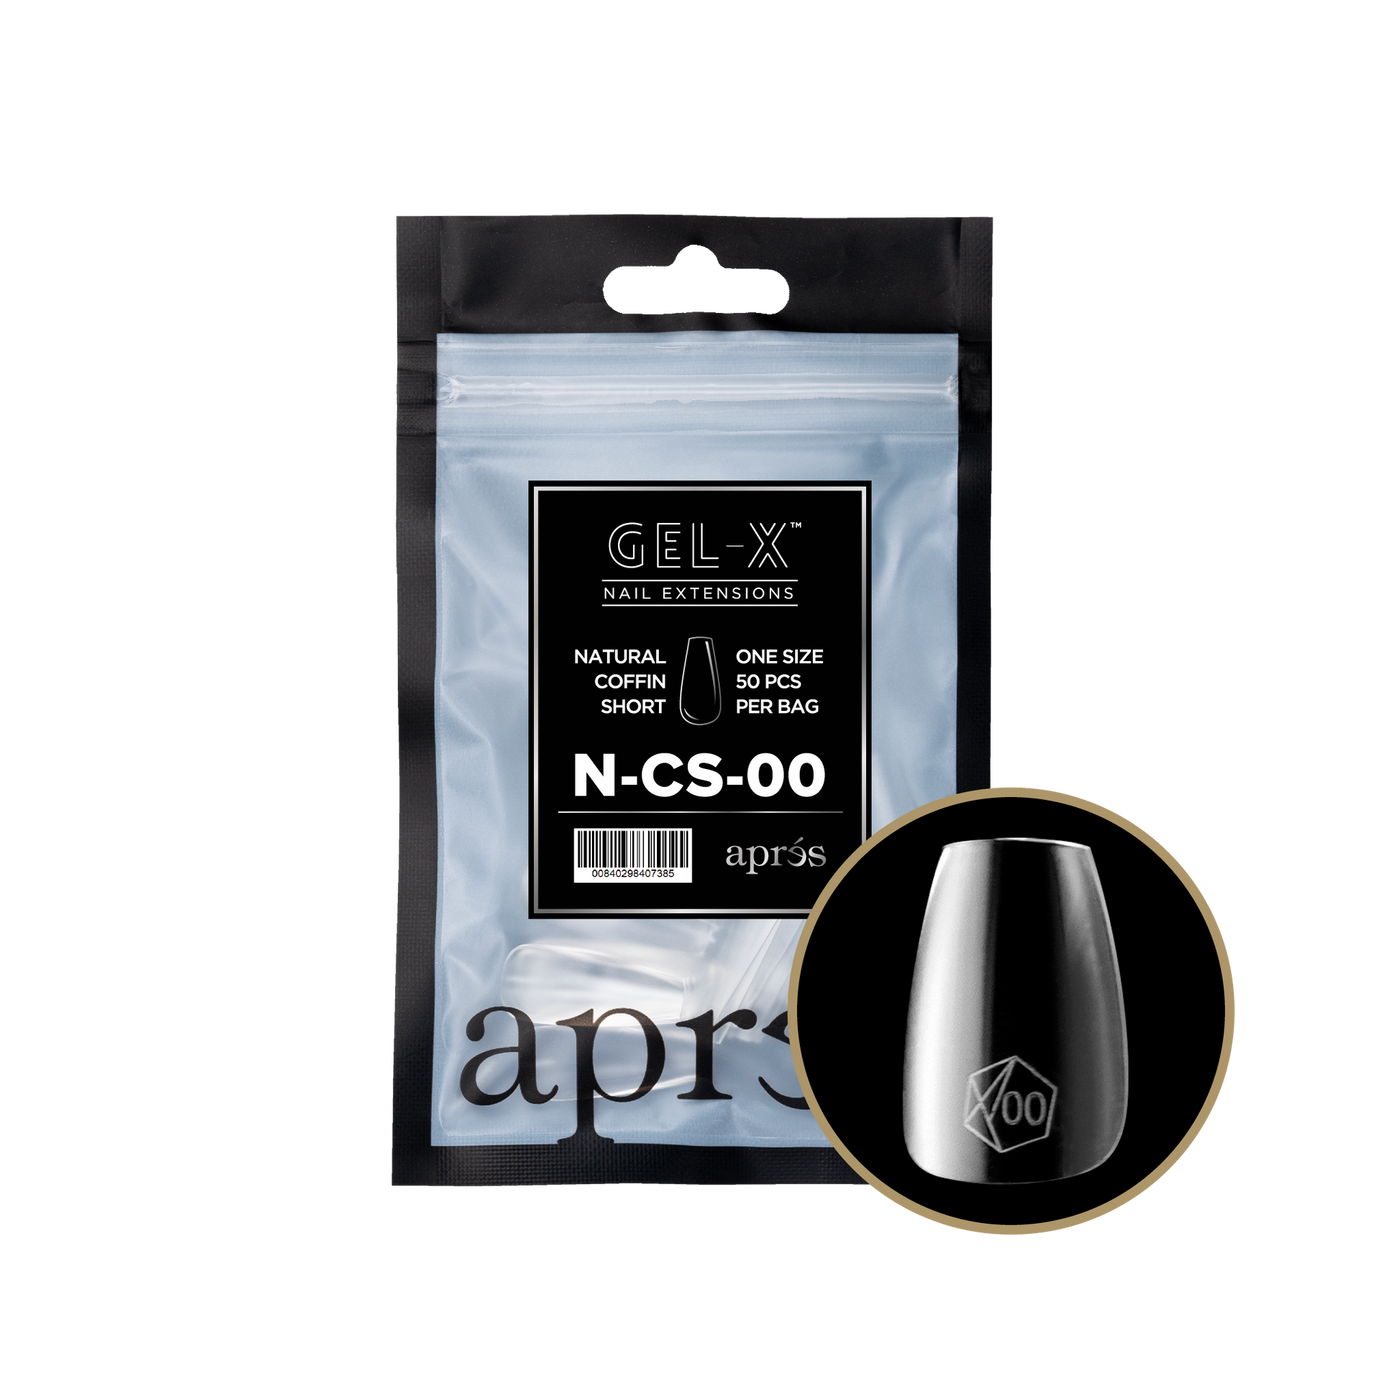 APRES - GEL-X® NATURAL COFFIN SHORT REFILL BAG 2.0